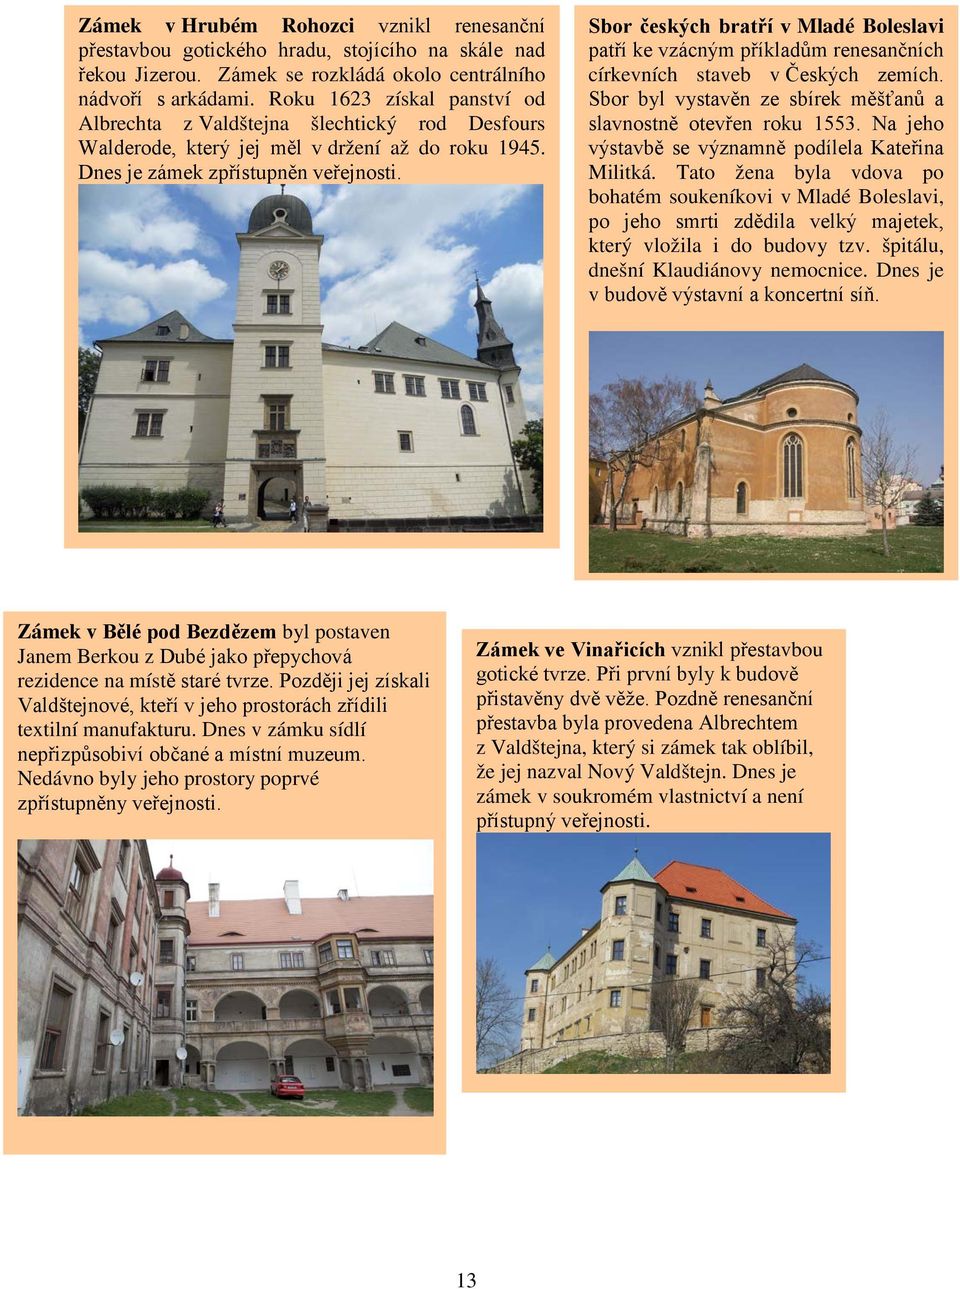 Sbor českých bratří v Mladé Boleslavi patří ke vzácným příkladům renesančních církevních staveb v Českých zemích. Sbor byl vystavěn ze sbírek měšťanů a slavnostně otevřen roku 1553.